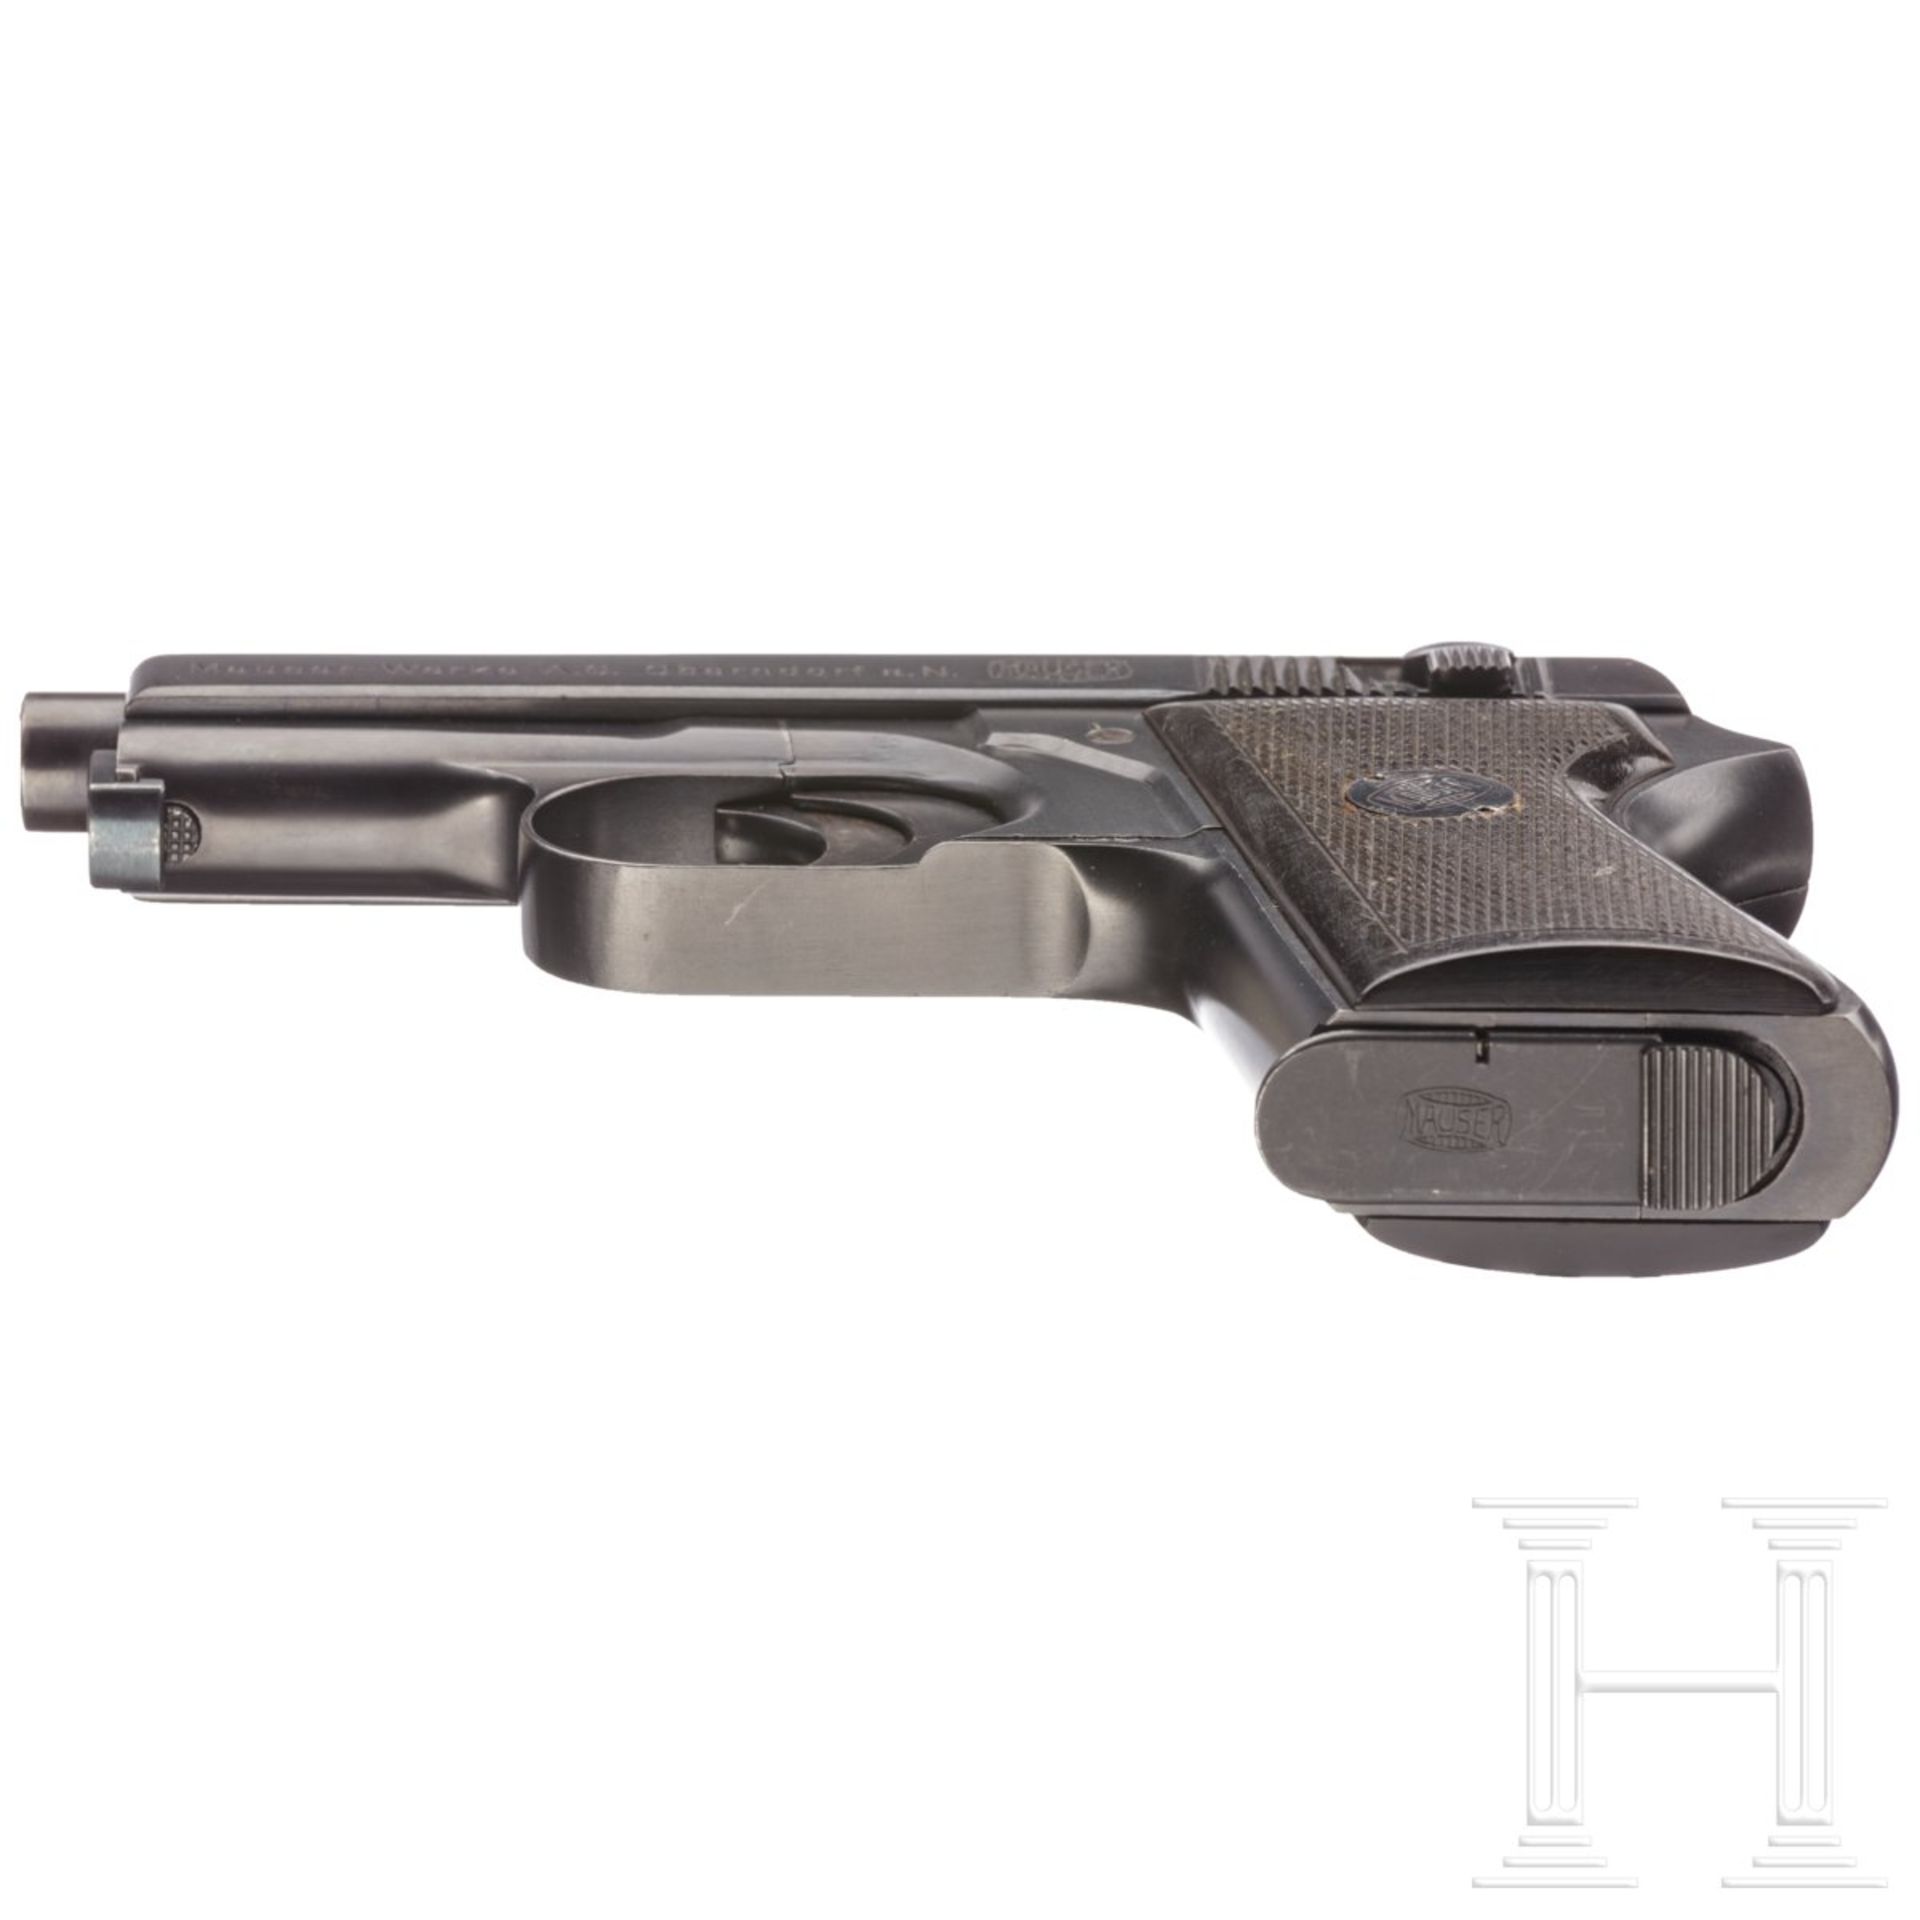 Mauser Selbstladepistole - Prototyp mit Hahn und Revolverspannung - Bild 5 aus 5